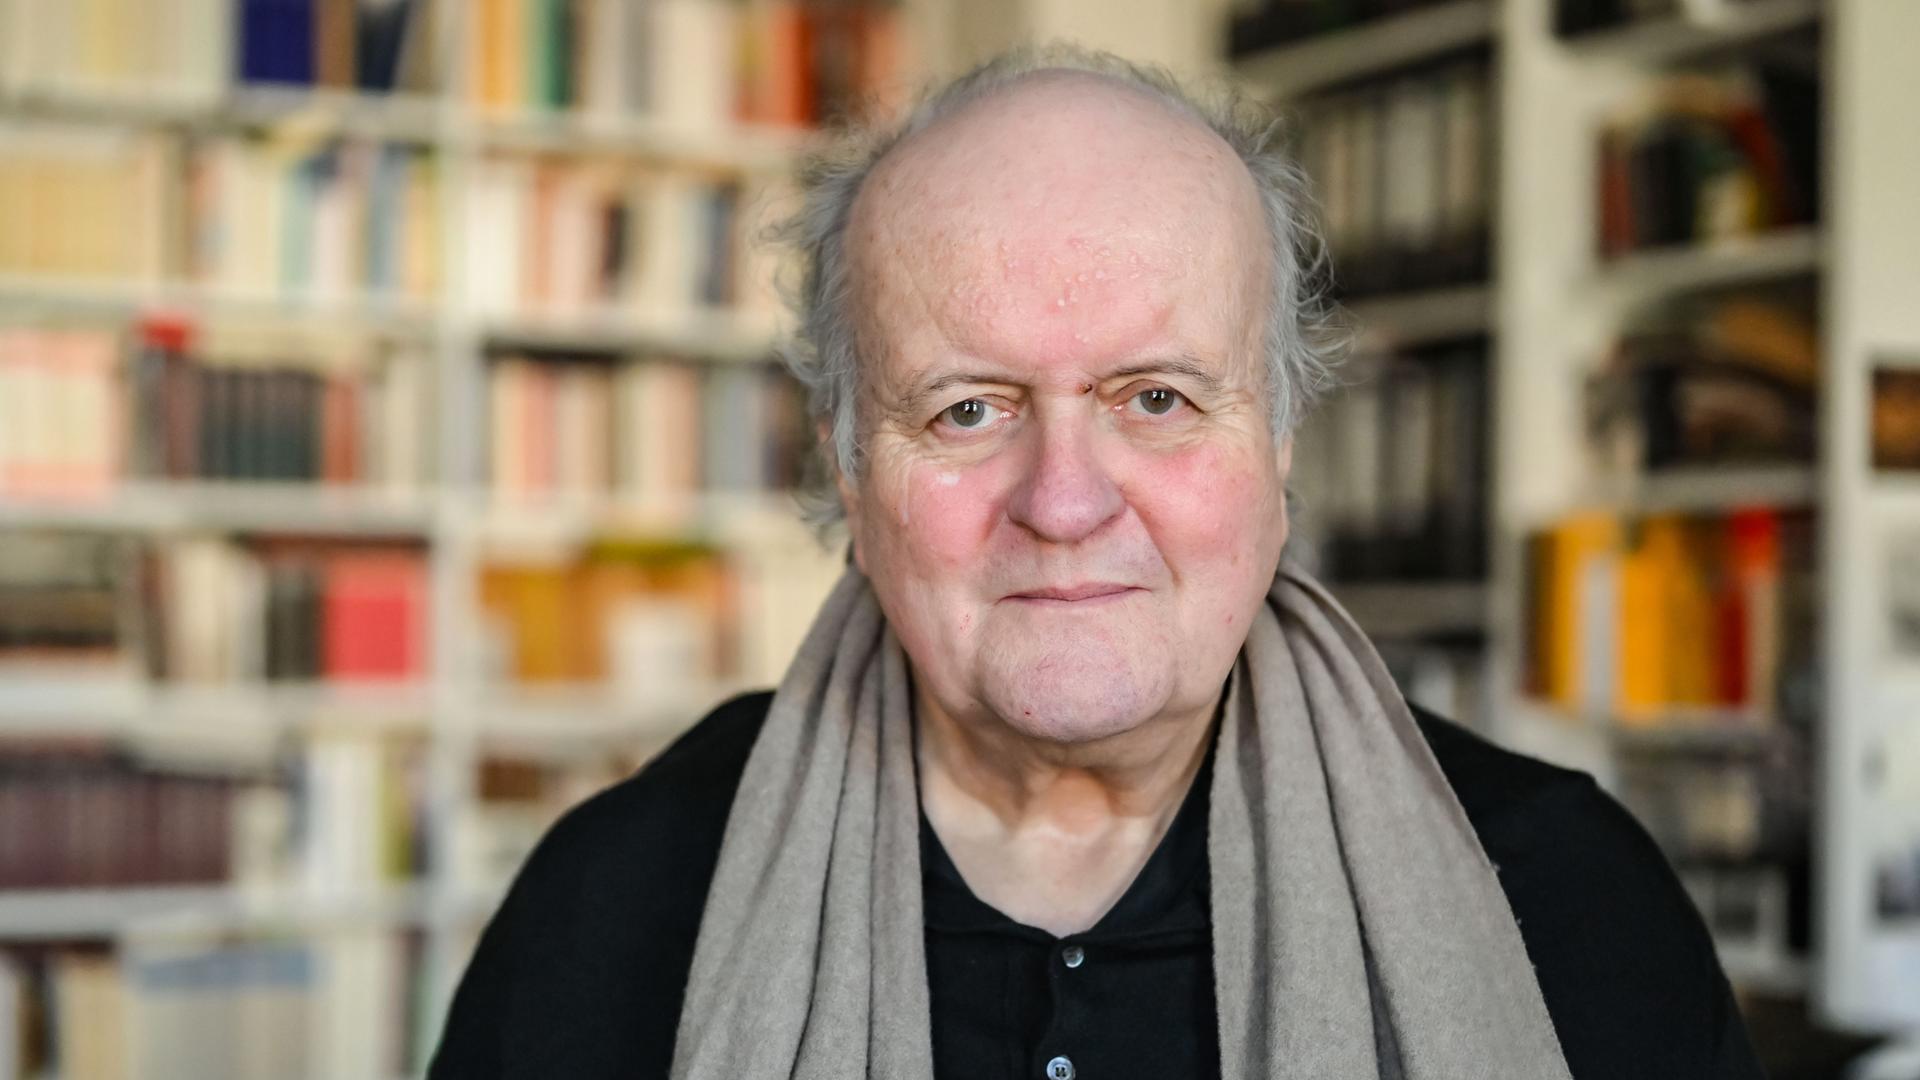 Wolfgang Rihm, ein älterer Mann, blickt freundlich in die Kamera. Er trägt ein schwarzes Hemd und einen braunen Schal. Hinter ihm ist ein großes Bücherregal zu sehen.